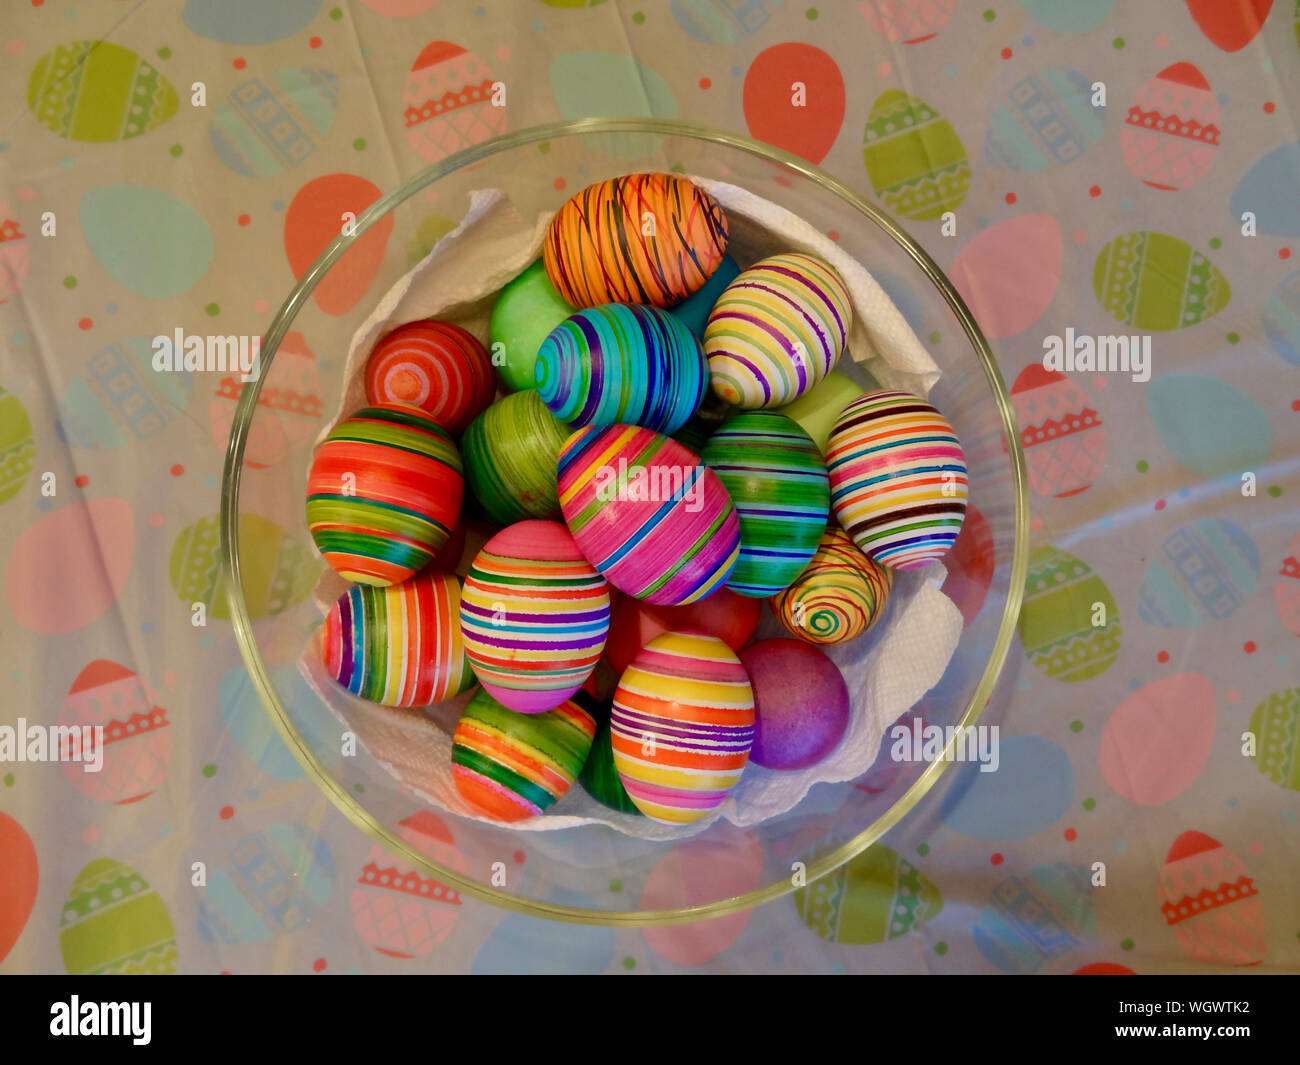 Eine Sammlung von Eiern zu Ostern in eine Glasschüssel, sitzen auf einem Kunststoff Tischdecke ist gefärbt, bedruckt mit ein Ostern Thema. Stockfoto